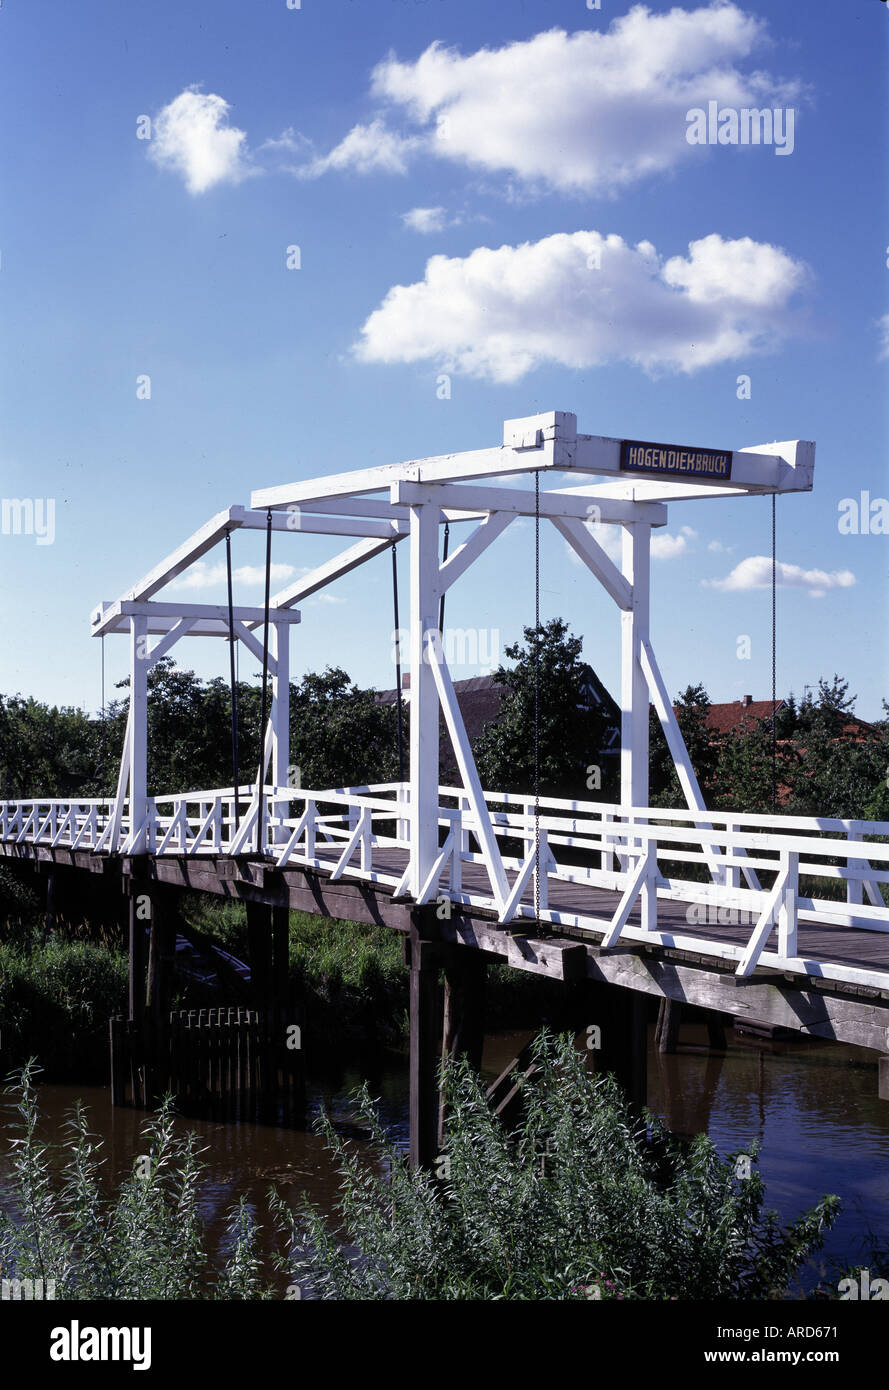 Steinkirchen, Hogendiek-Brücke über die Lühe, Banque D'Images